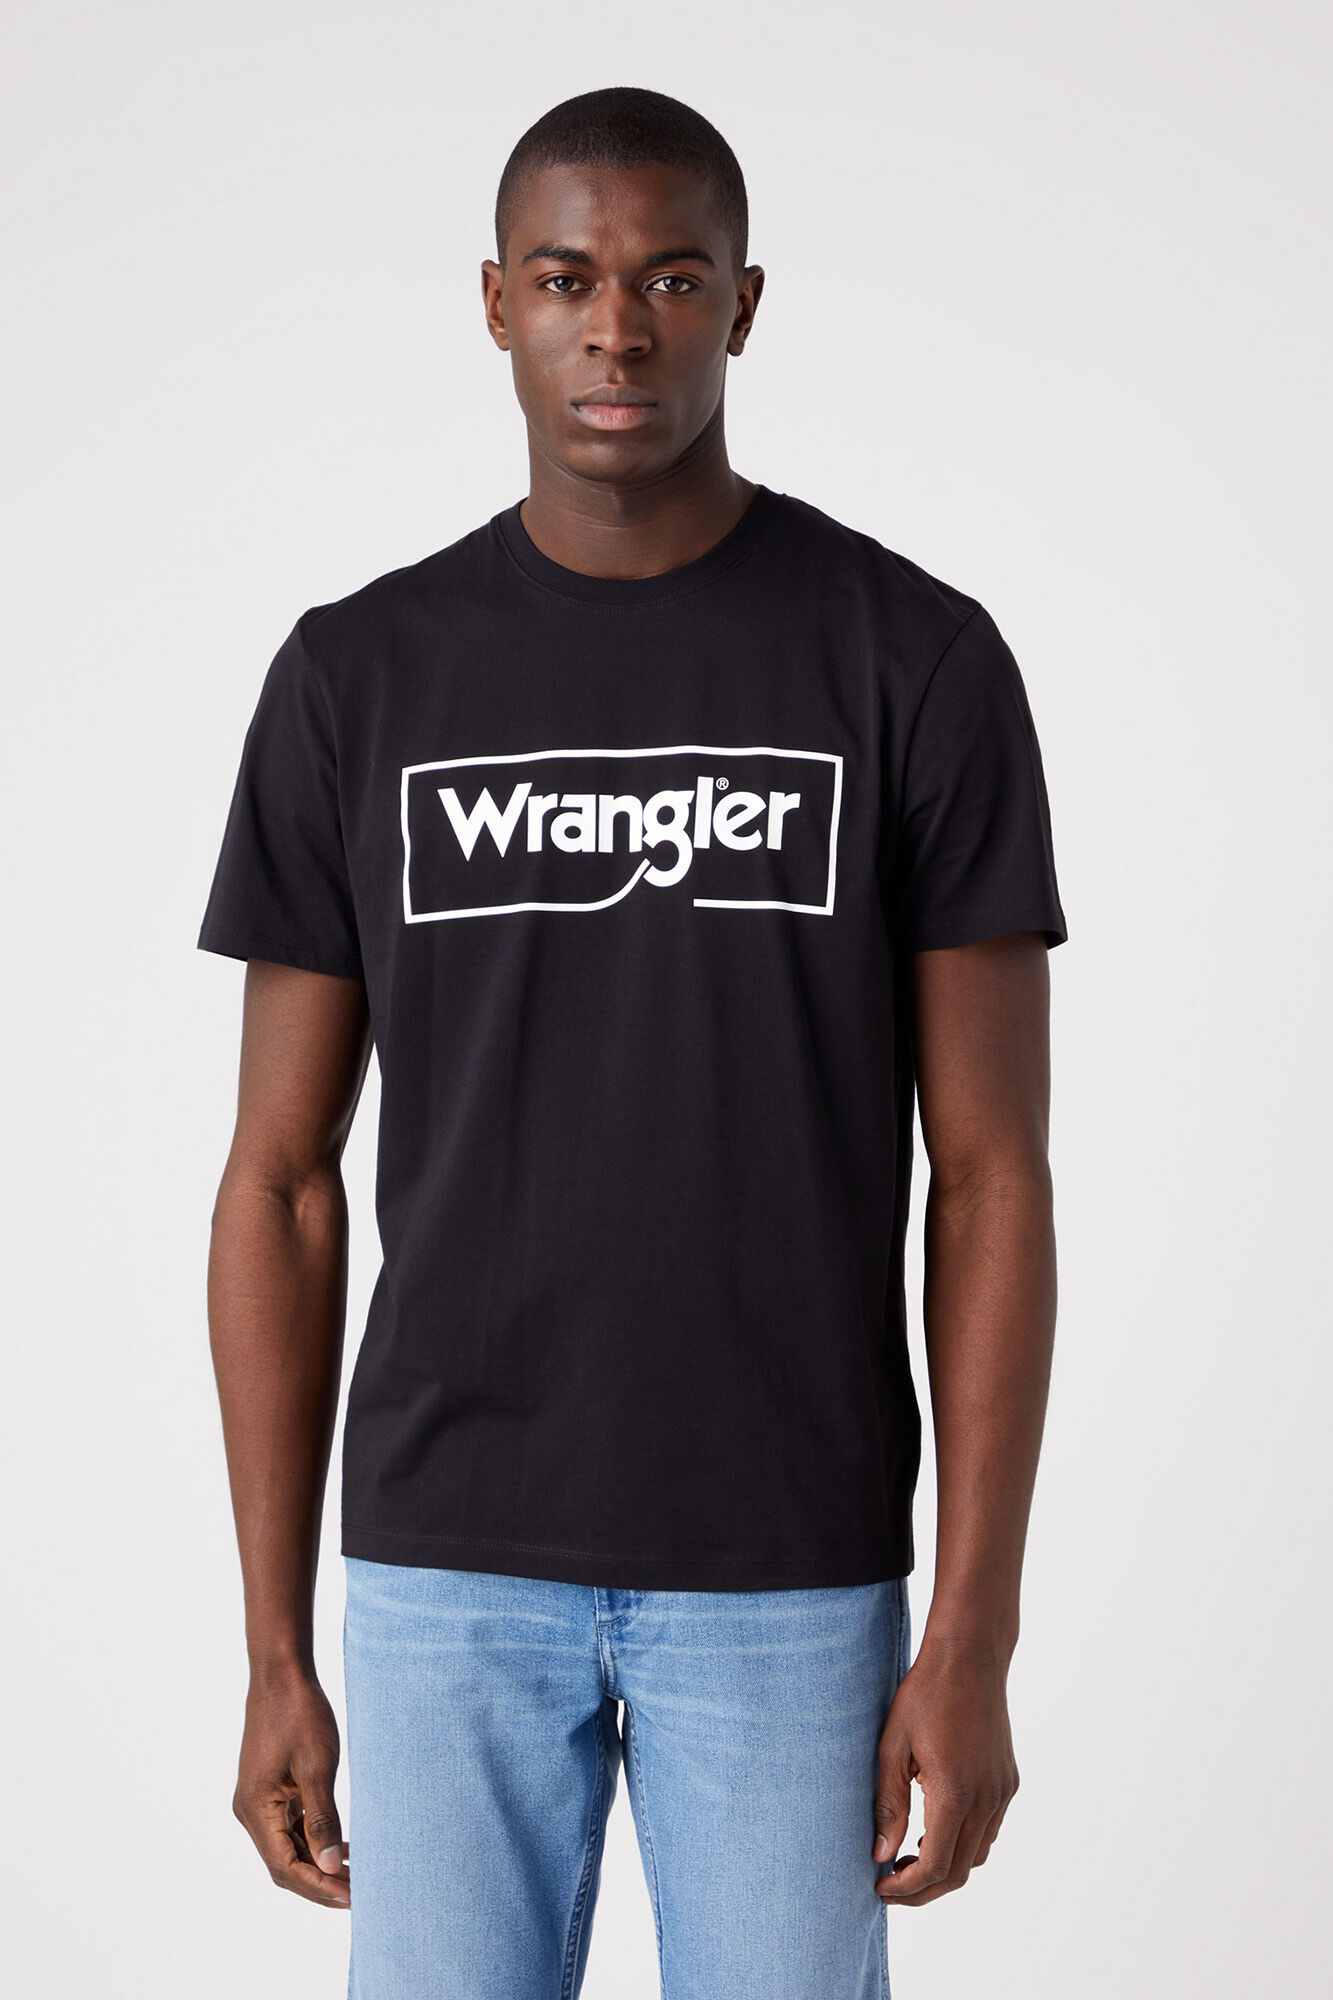 Wrangler Logo png images | PNGEgg